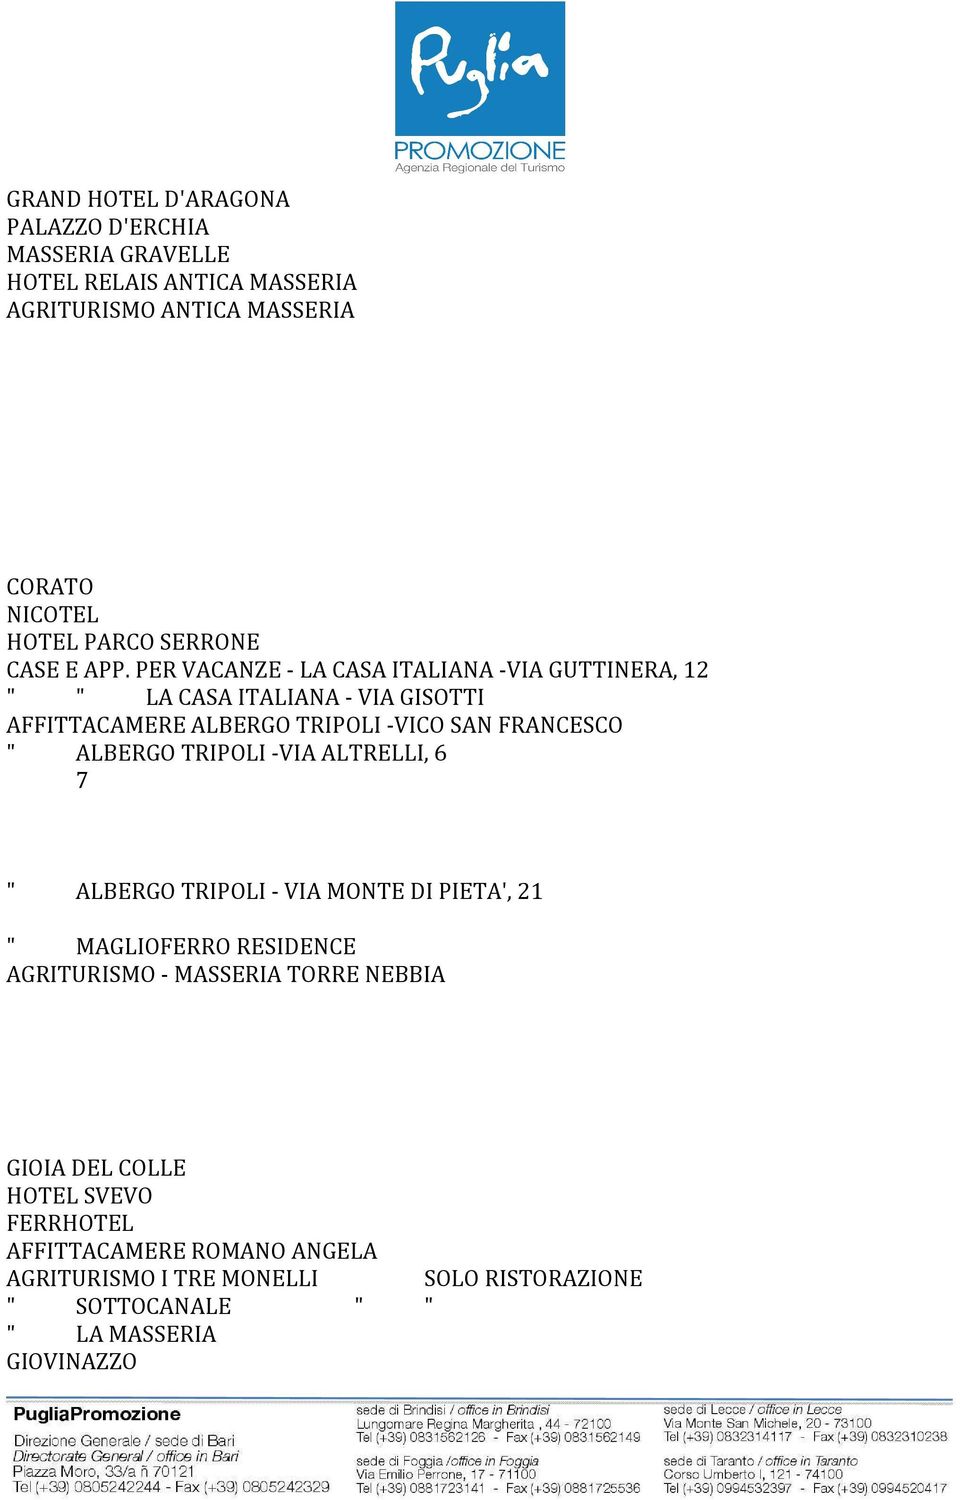 PER VACANZE - LA CASA ITALIANA -VIA GUTTINERA, 12 " " LA CASA ITALIANA - VIA GISOTTI AFFITTACAMERE ALBERGO TRIPOLI -VICO SAN FRANCESCO " ALBERGO